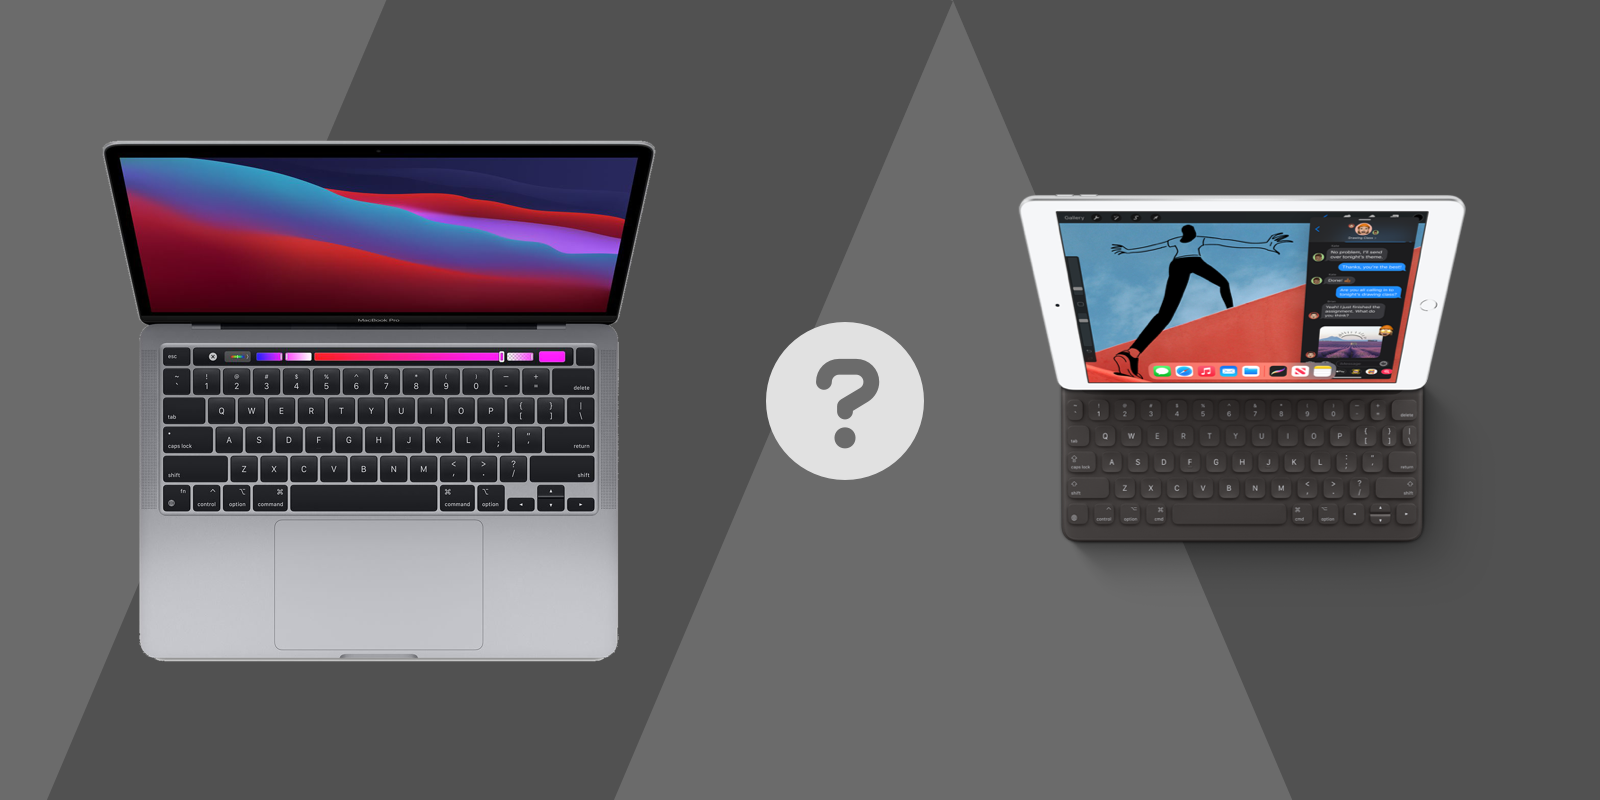 Mac or iPad